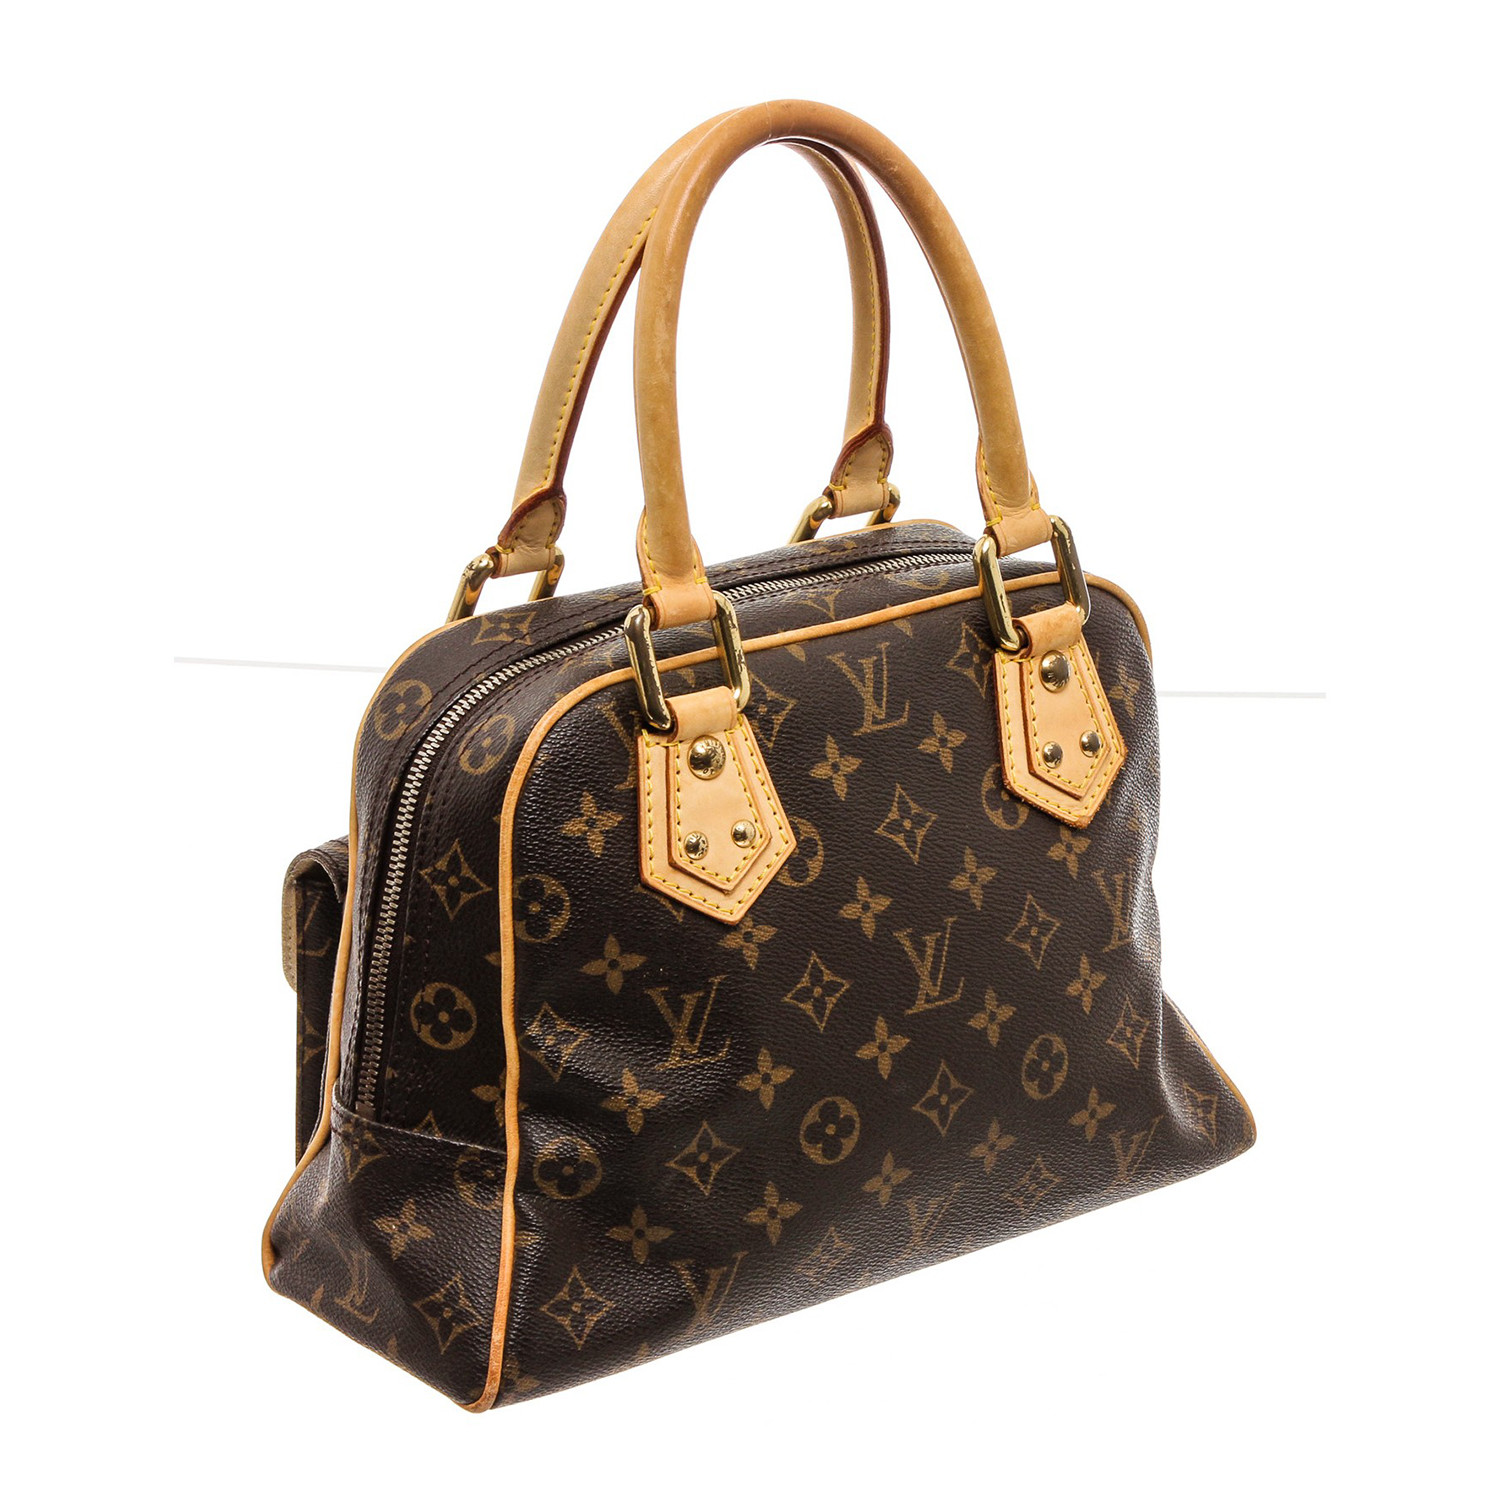 Vintage Louis Vuitton Handbag -  Canada